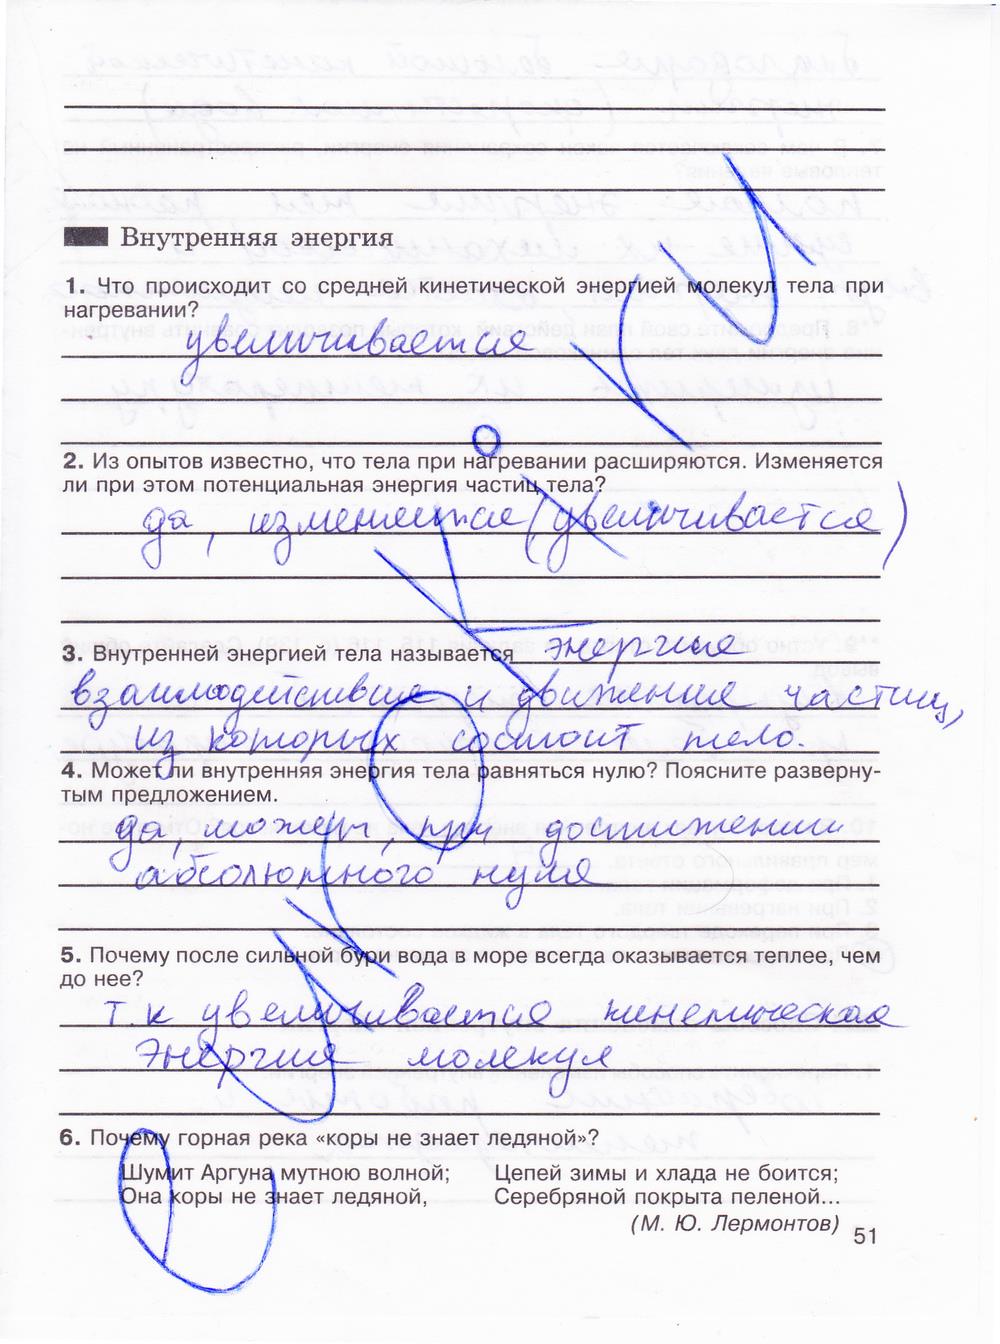 гдз 8 класс рабочая тетрадь страница 51 физика Мартынова, Иванова, Воронина